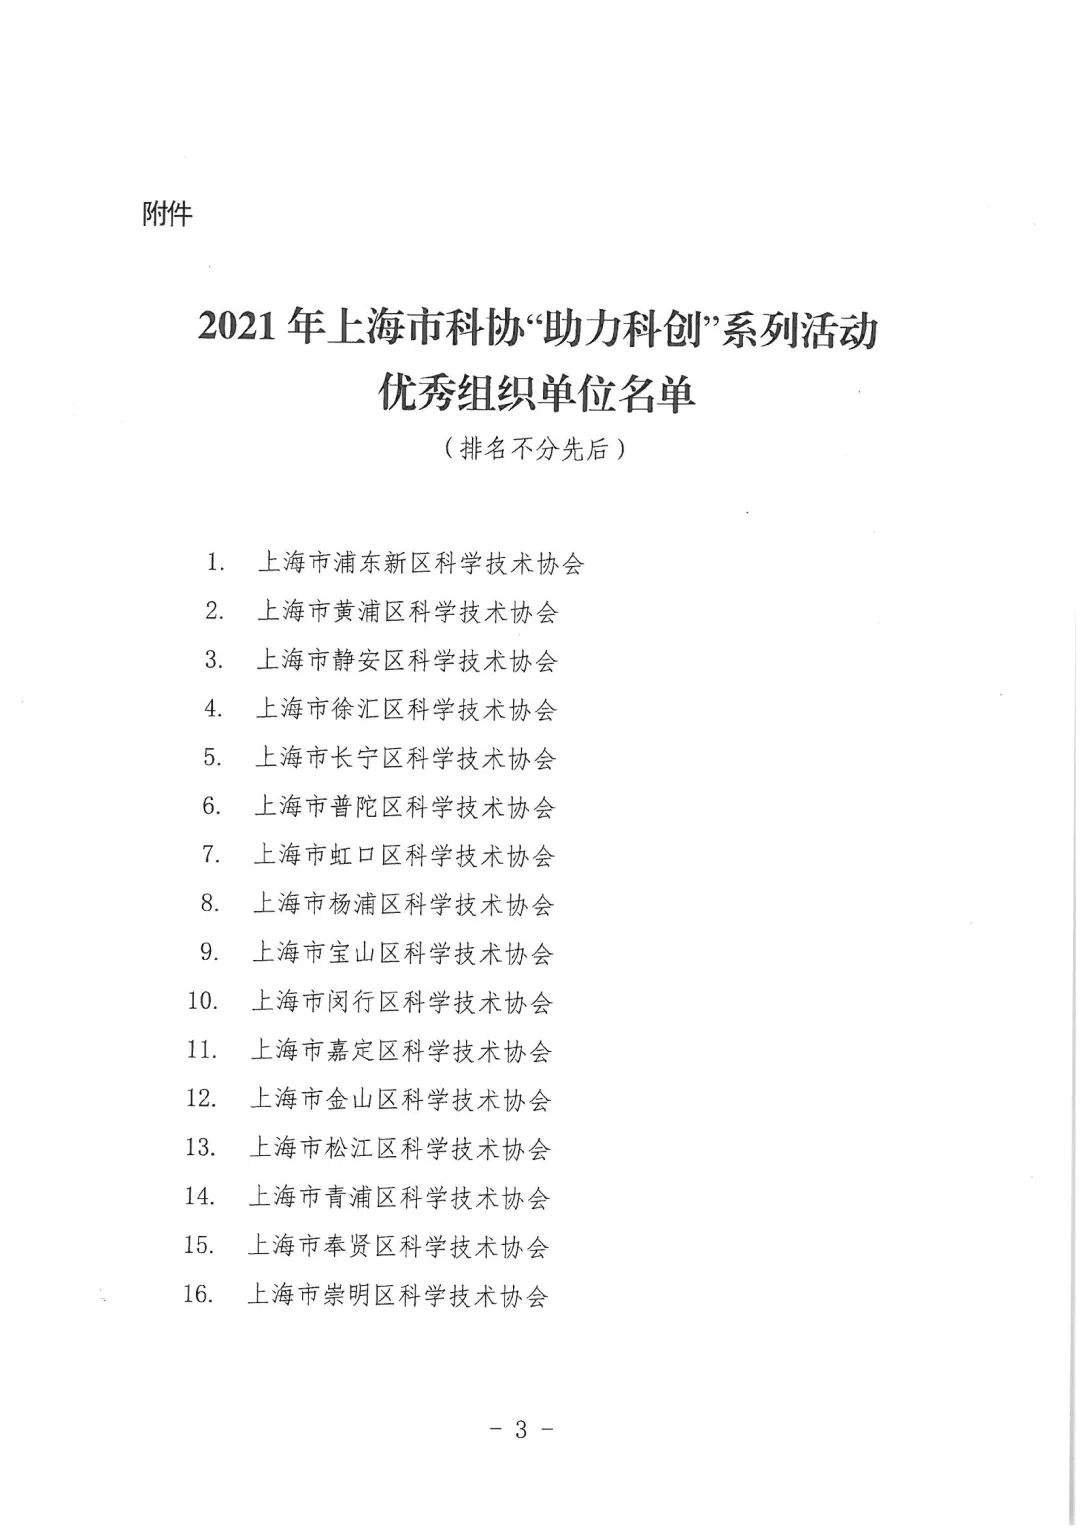 上海市科协助力科协系列活动优秀组织单位03.jpg